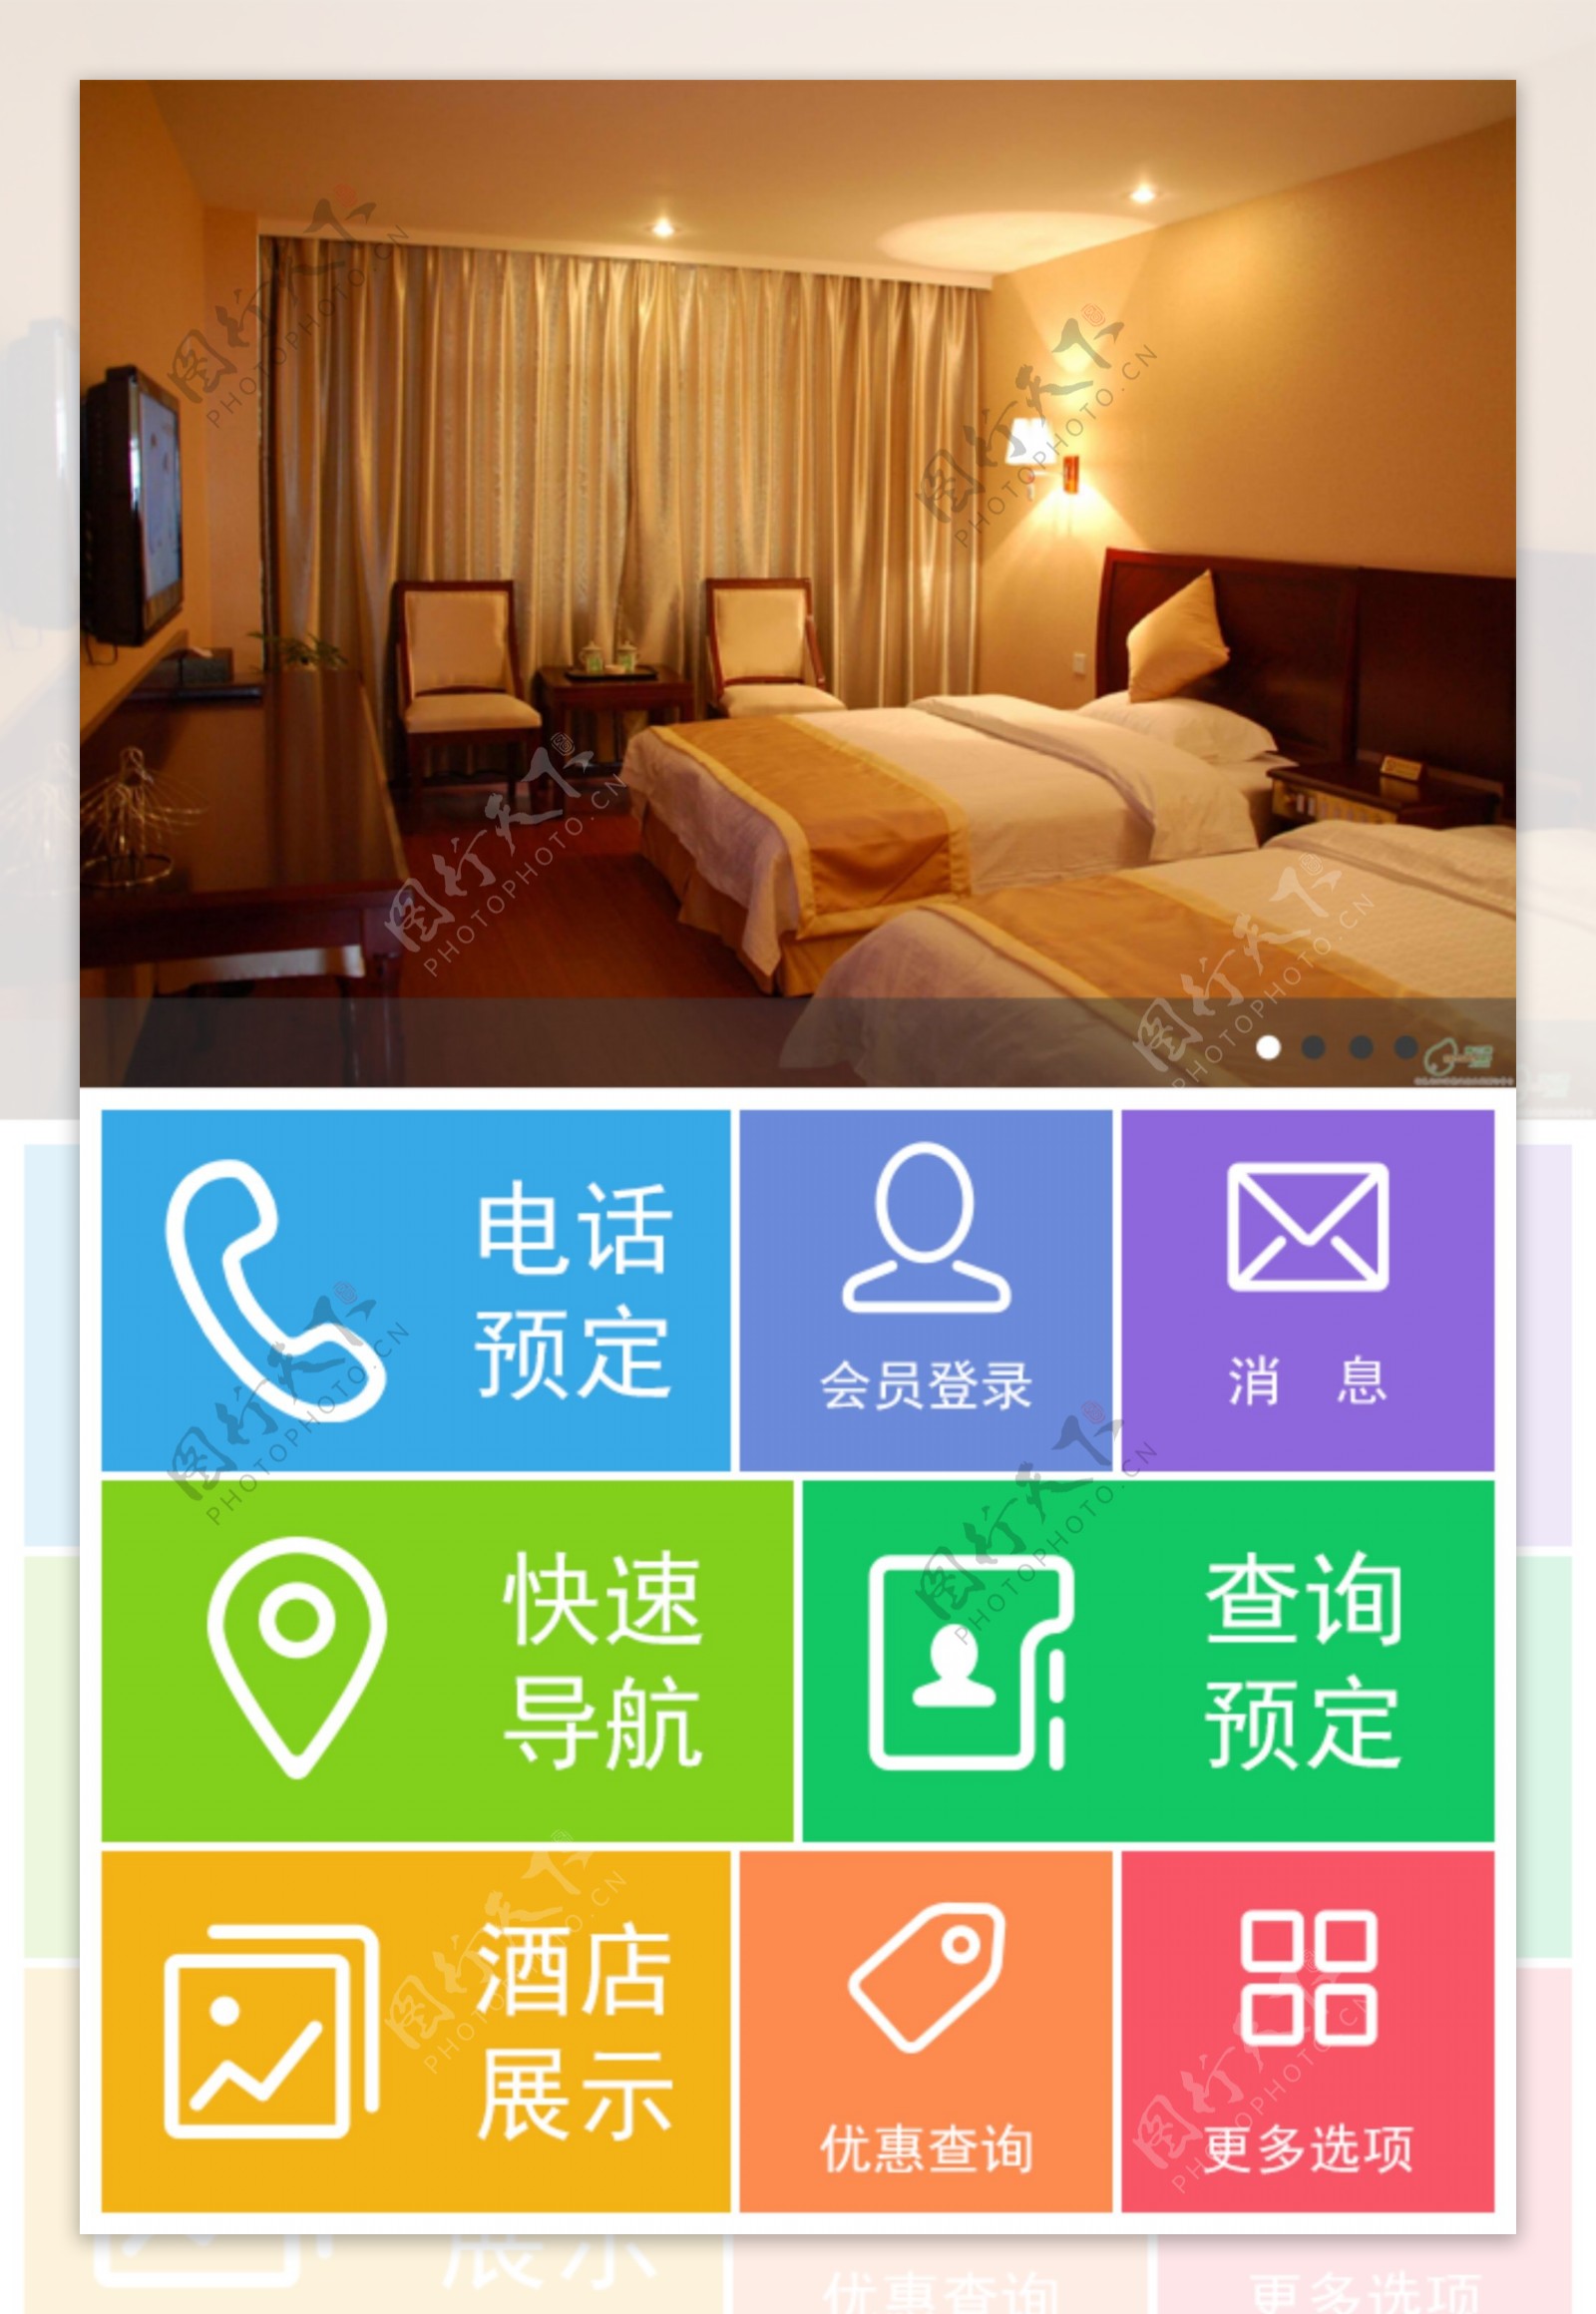 微酒店微信营销图片